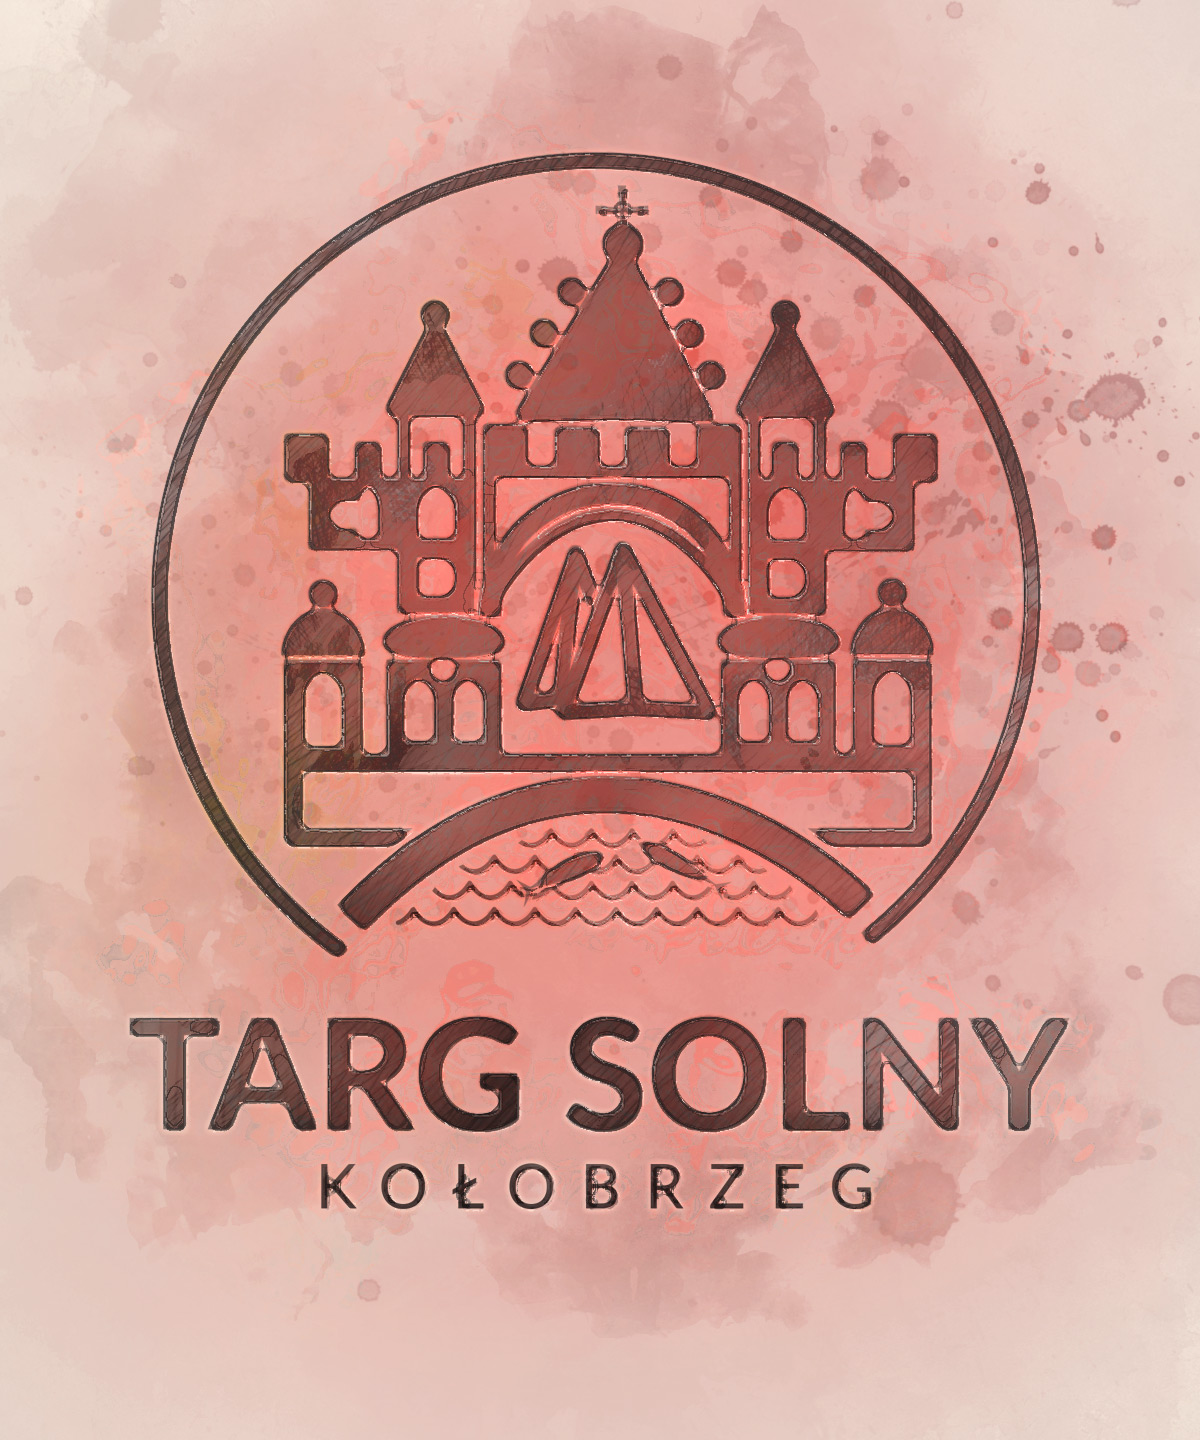 Targ Solny - logo